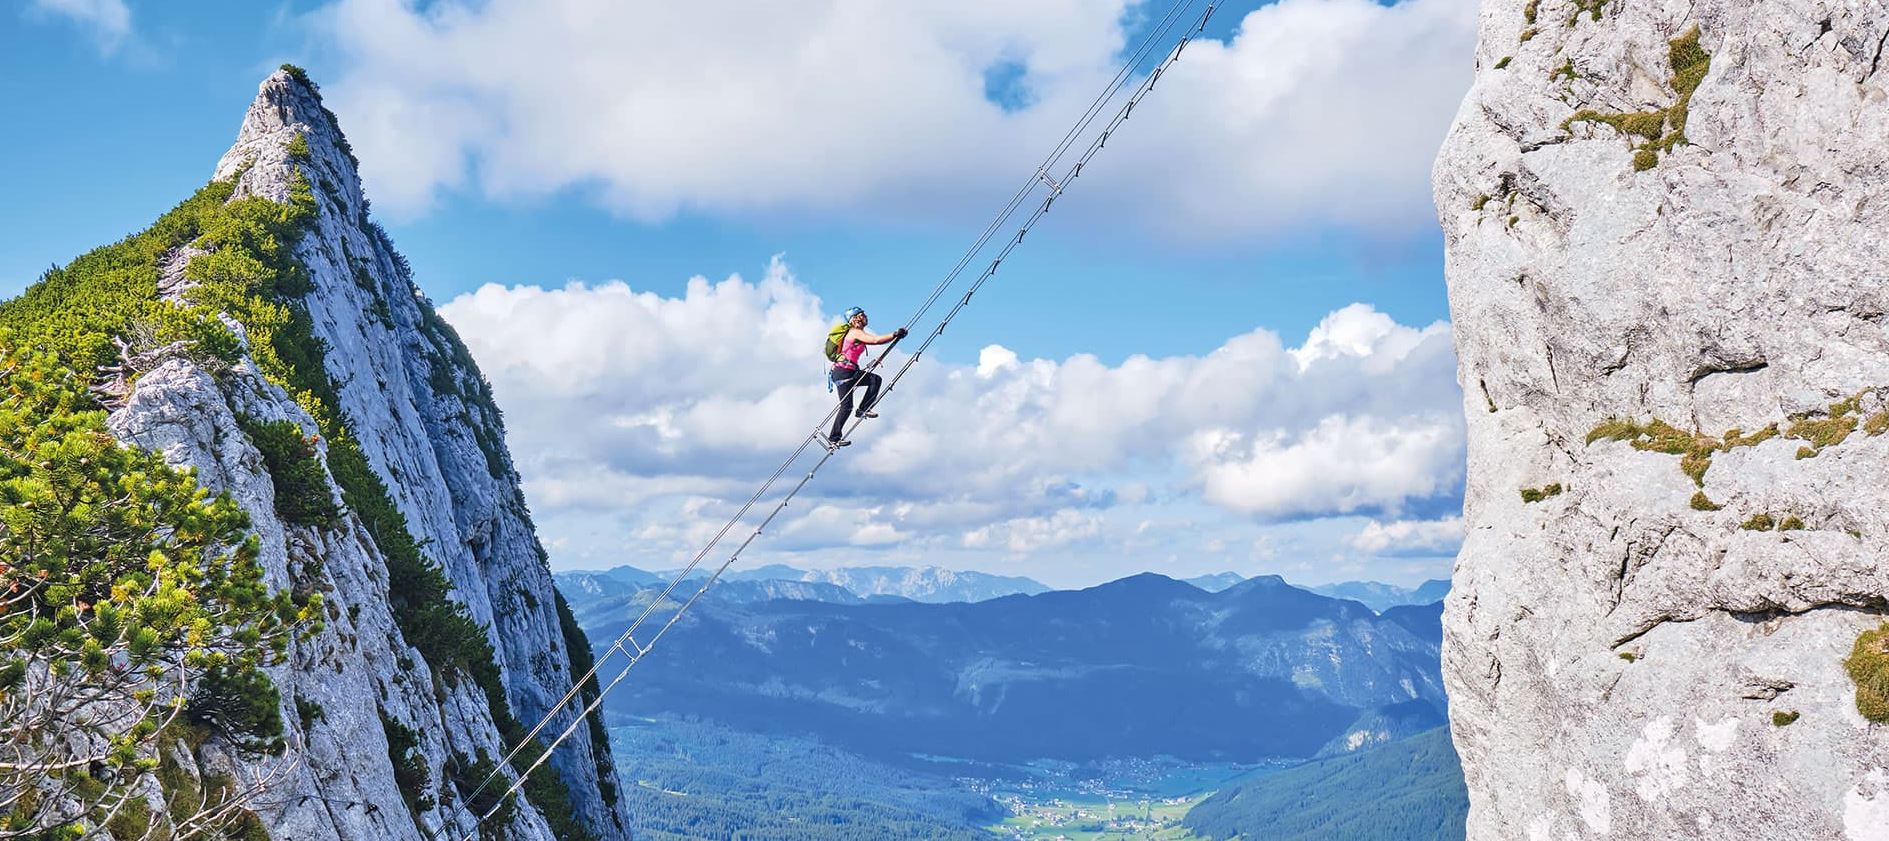 Τουρίστας διέσχισε «τη σκάλα προς τον ουρανό» στο δημοφιλές βουνό του Instagram και έπεσε από ύψος 91 μέτρων